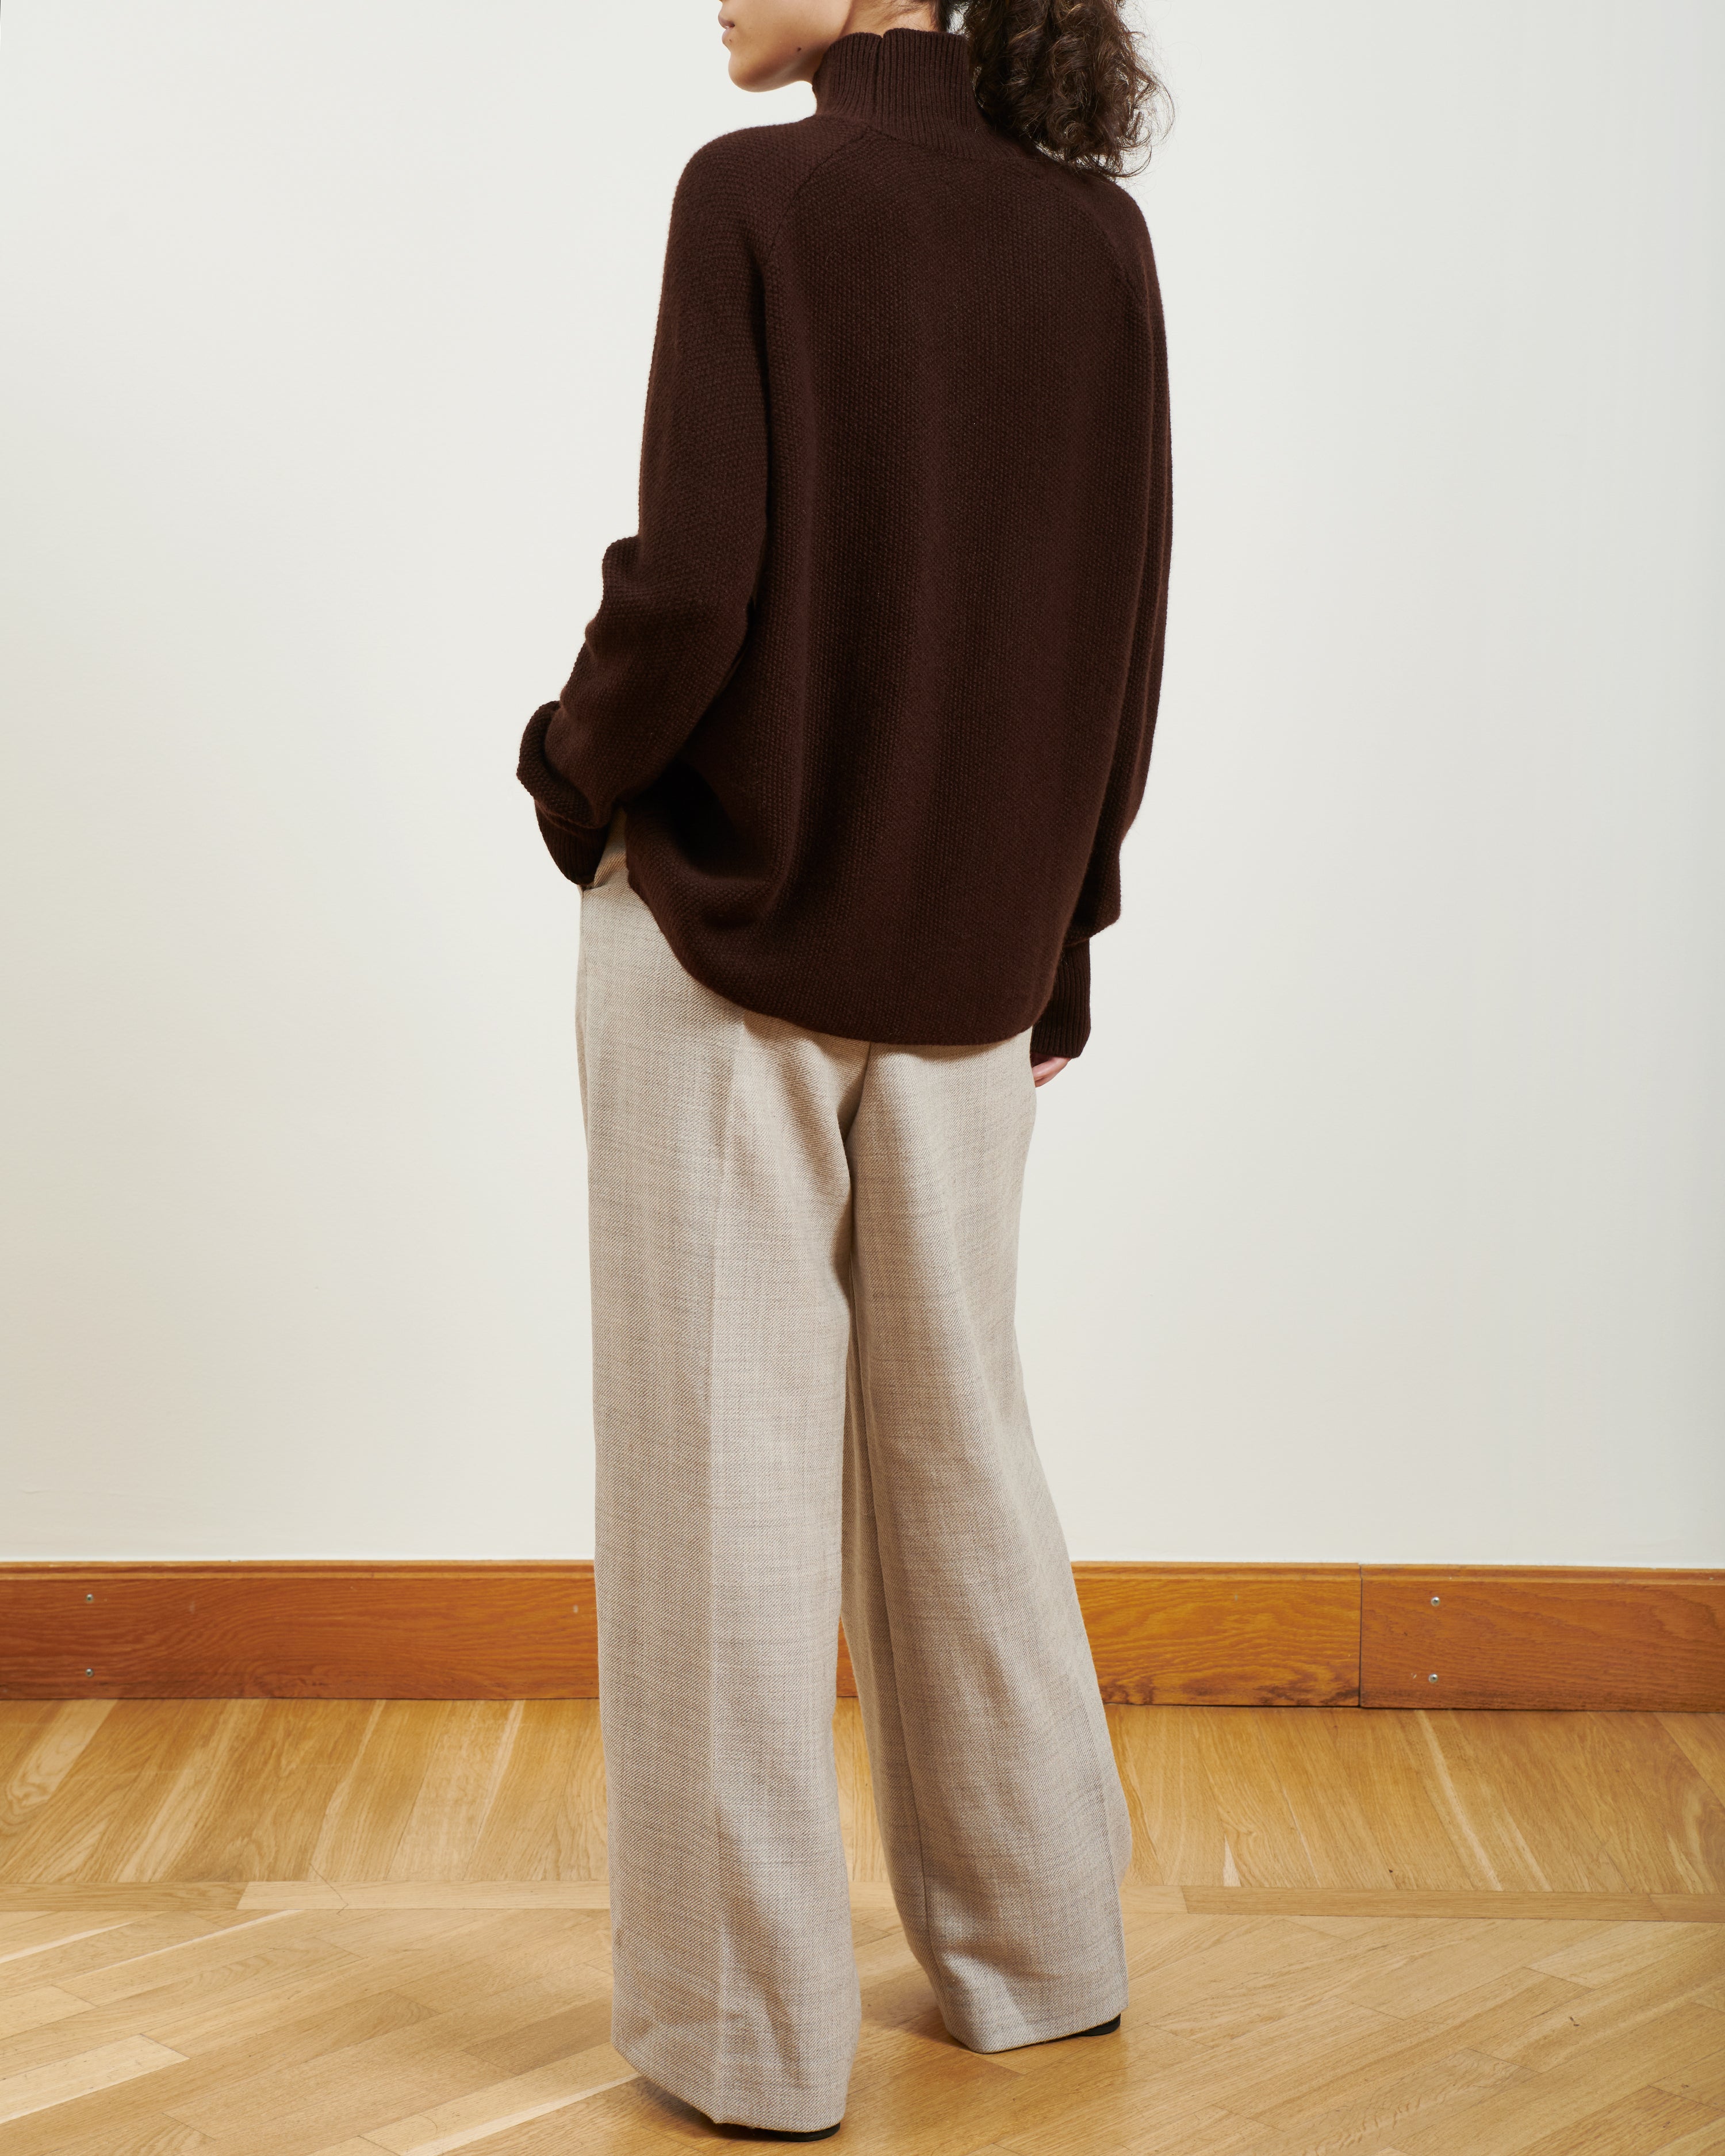 MILAN Truffle Brown - Santosh clothing